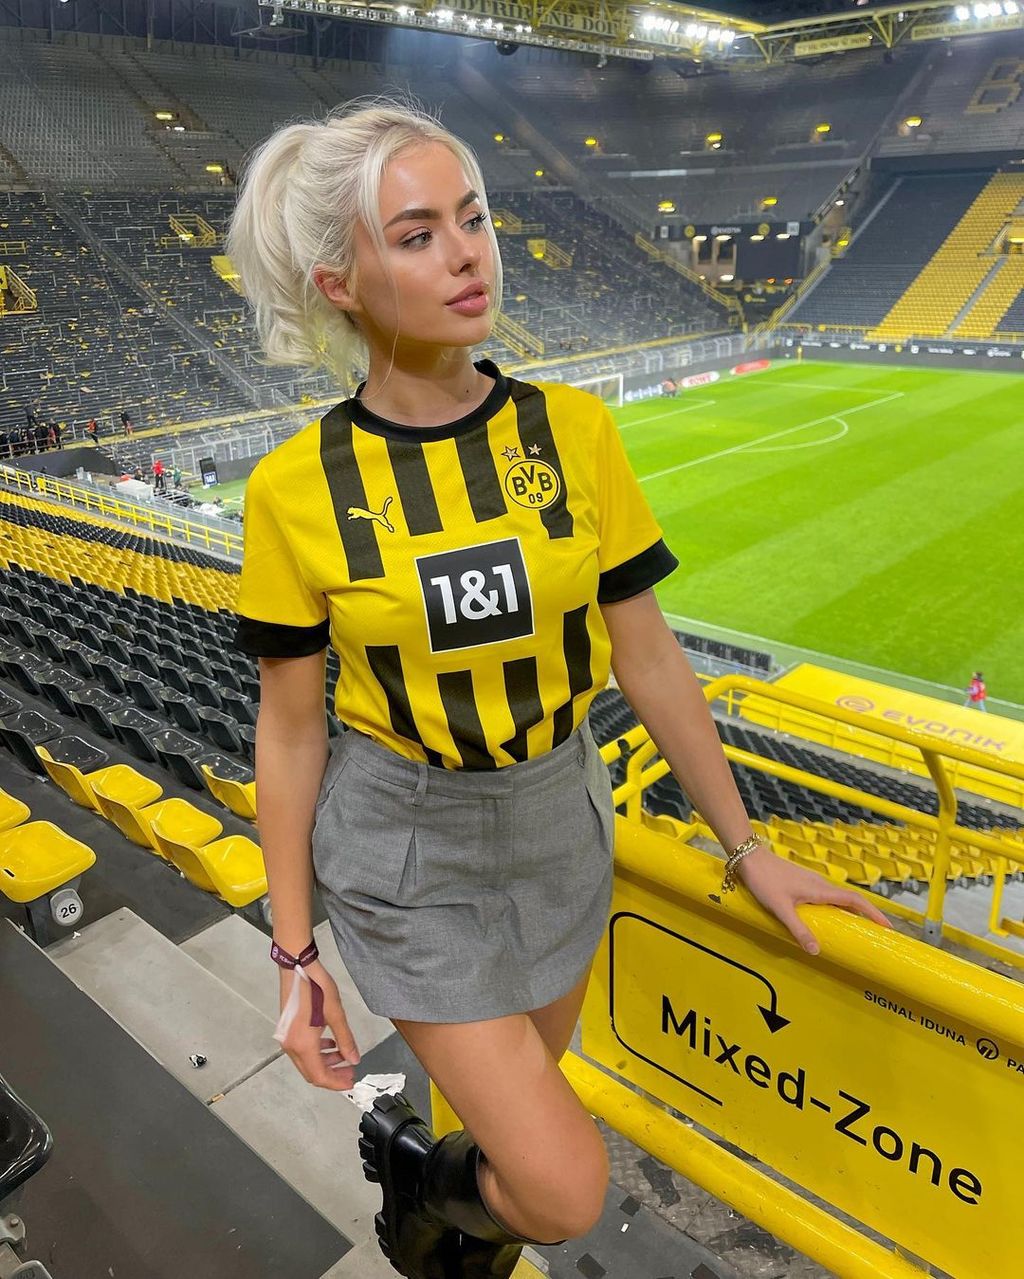 A 23 éves német lány imád meccsre járni, nagy rajongója a Dortmundnak és a kedvenc játékosa is a német együttes csapatkapitánya, Marco Reus 